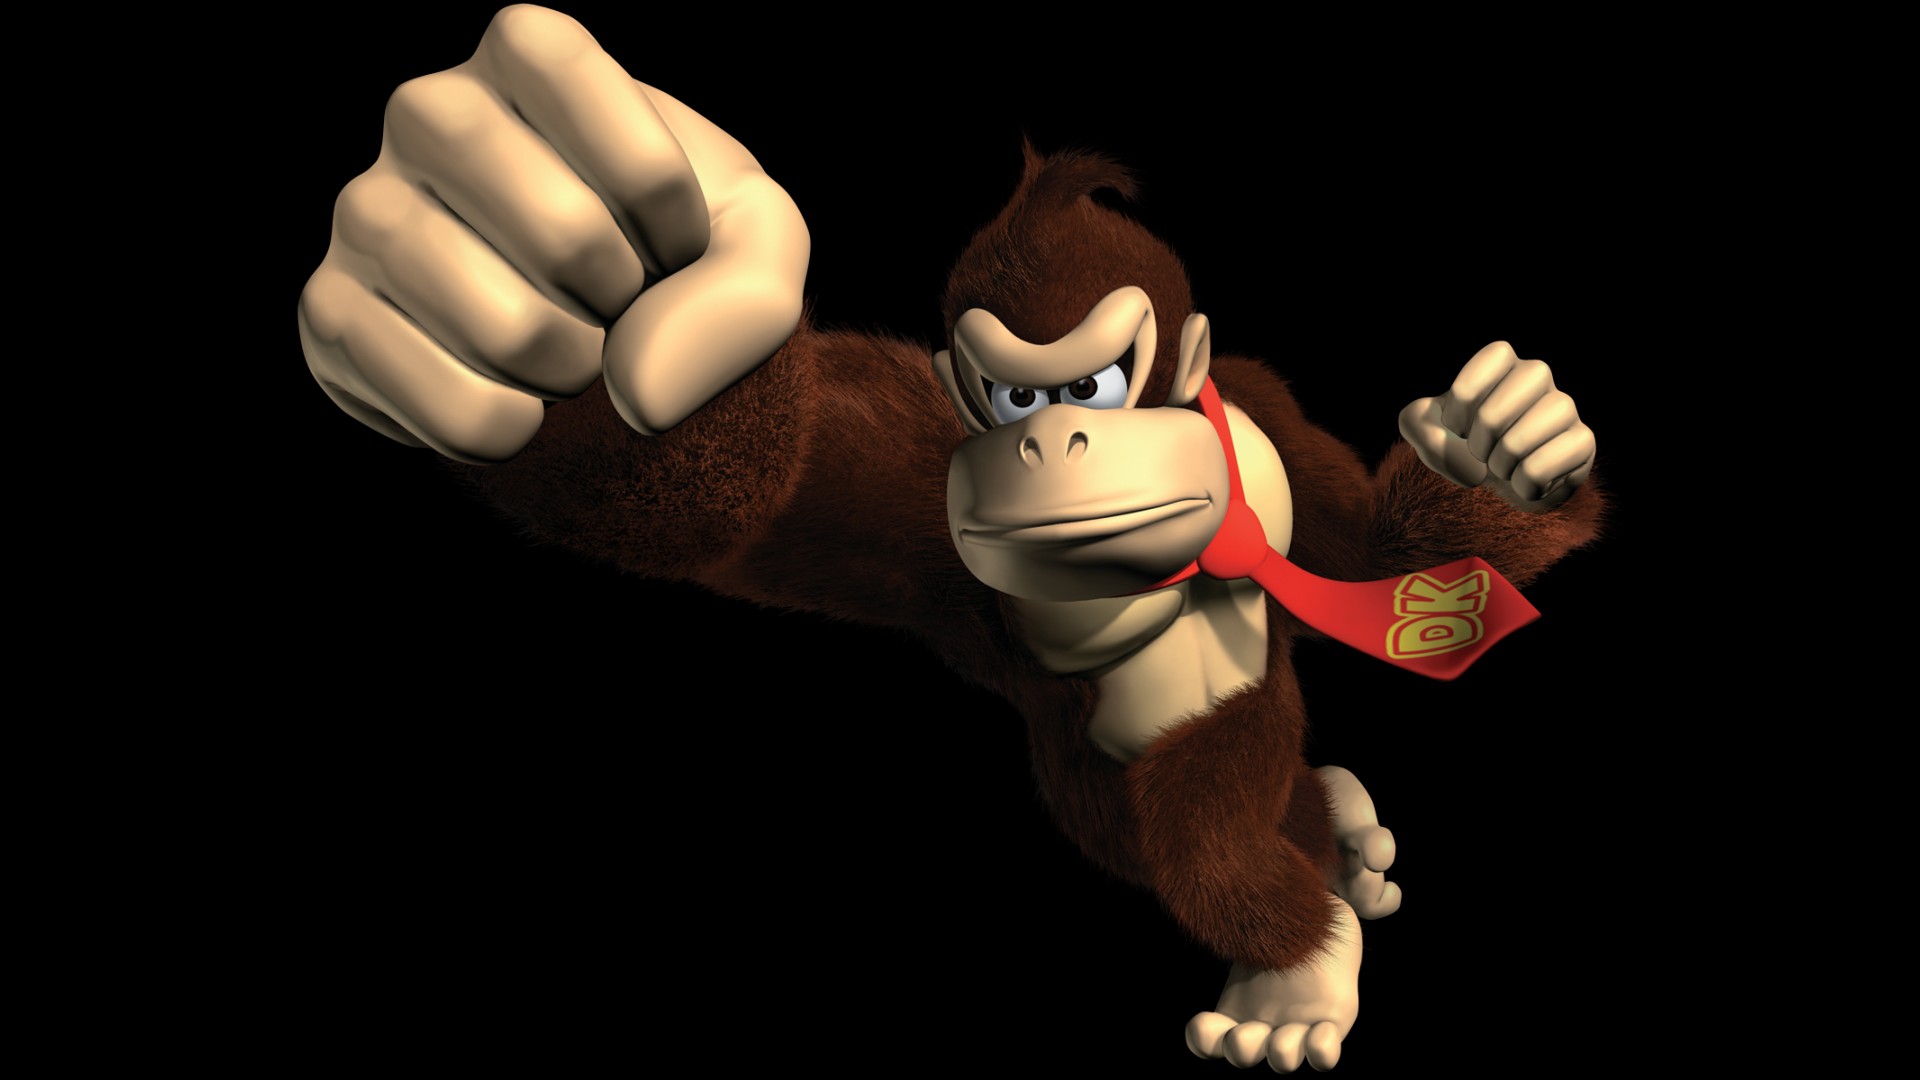 Donkey Kong: Jungle Beat